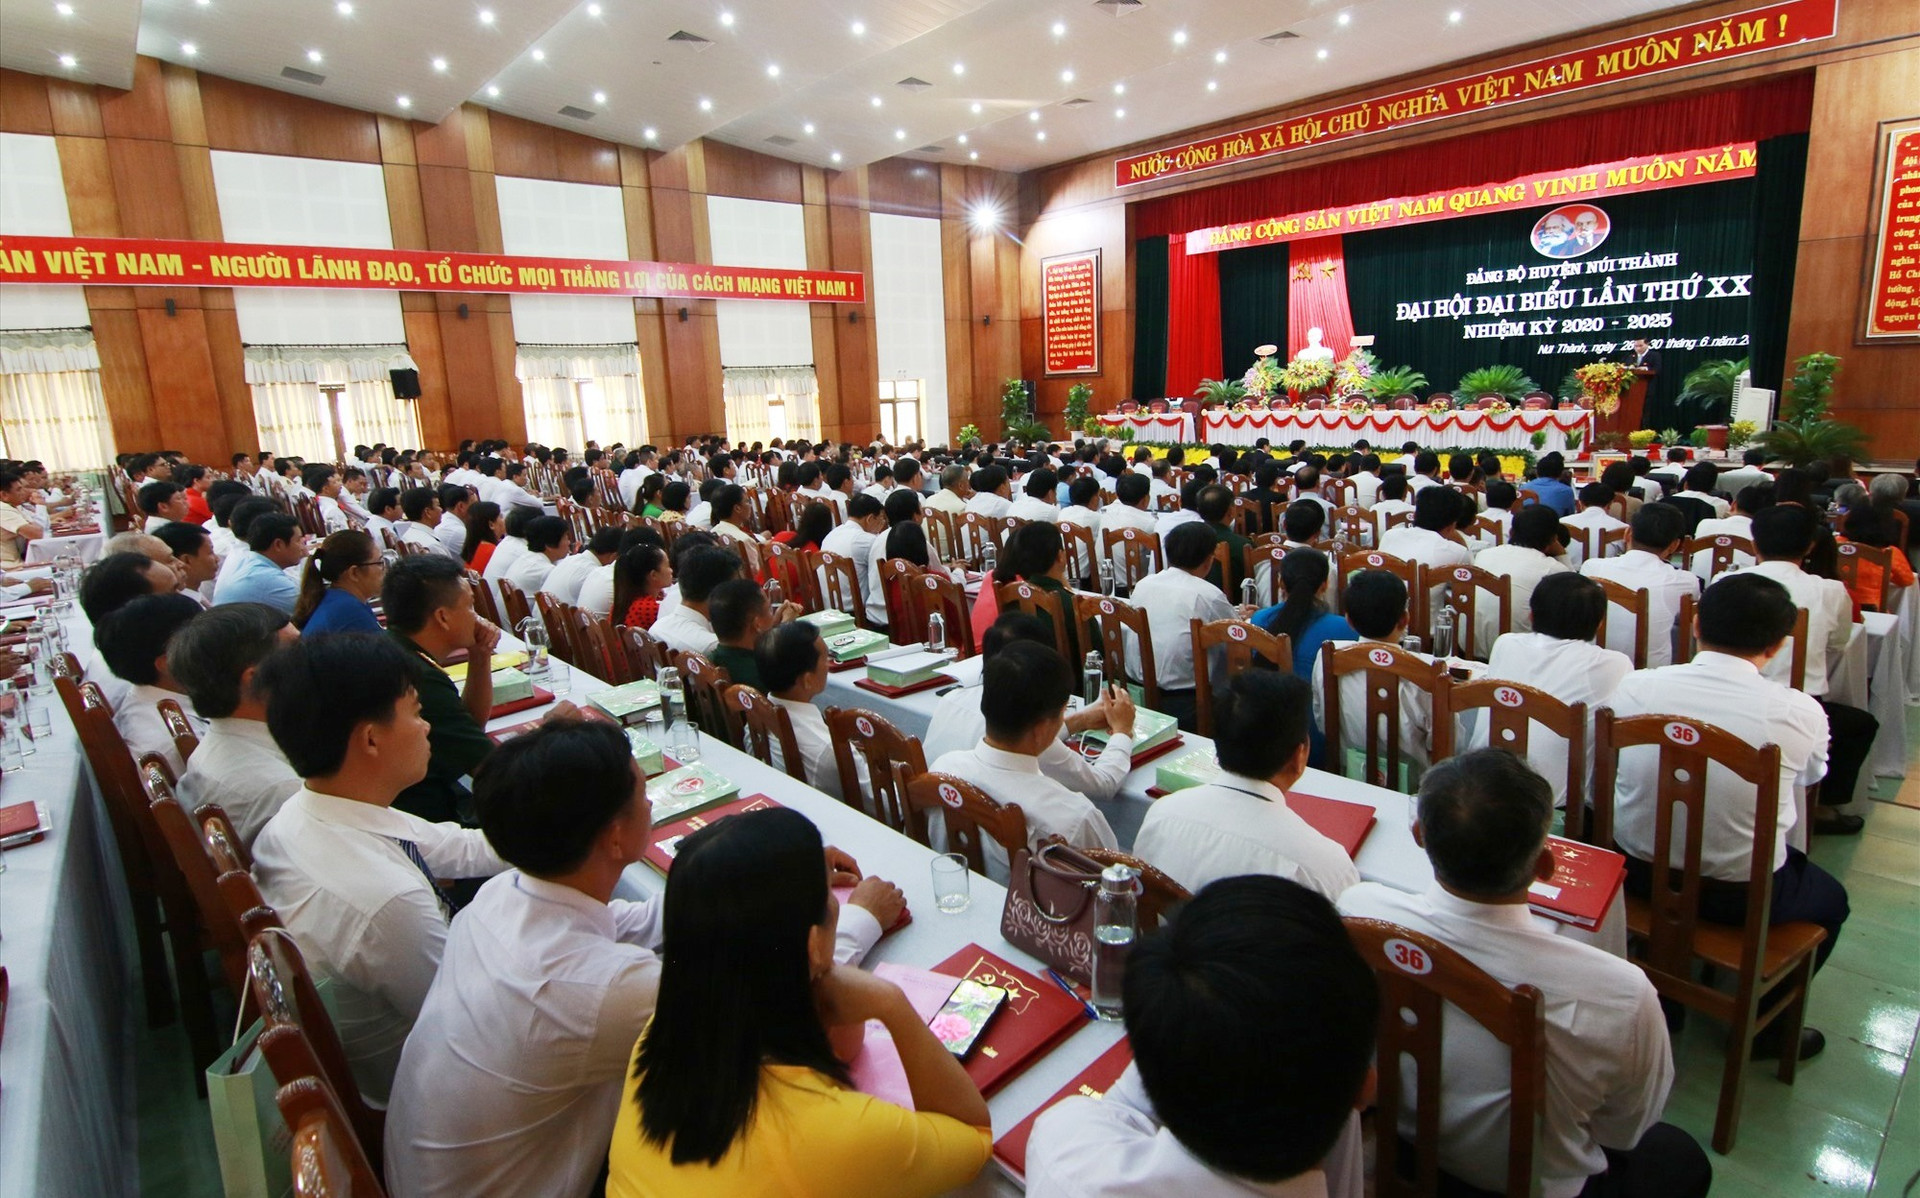 297 đại biểu đại diện cho hơn 5.000 Đảng viên huyện Núi Thành dự đại hội. Ảnh: T.C